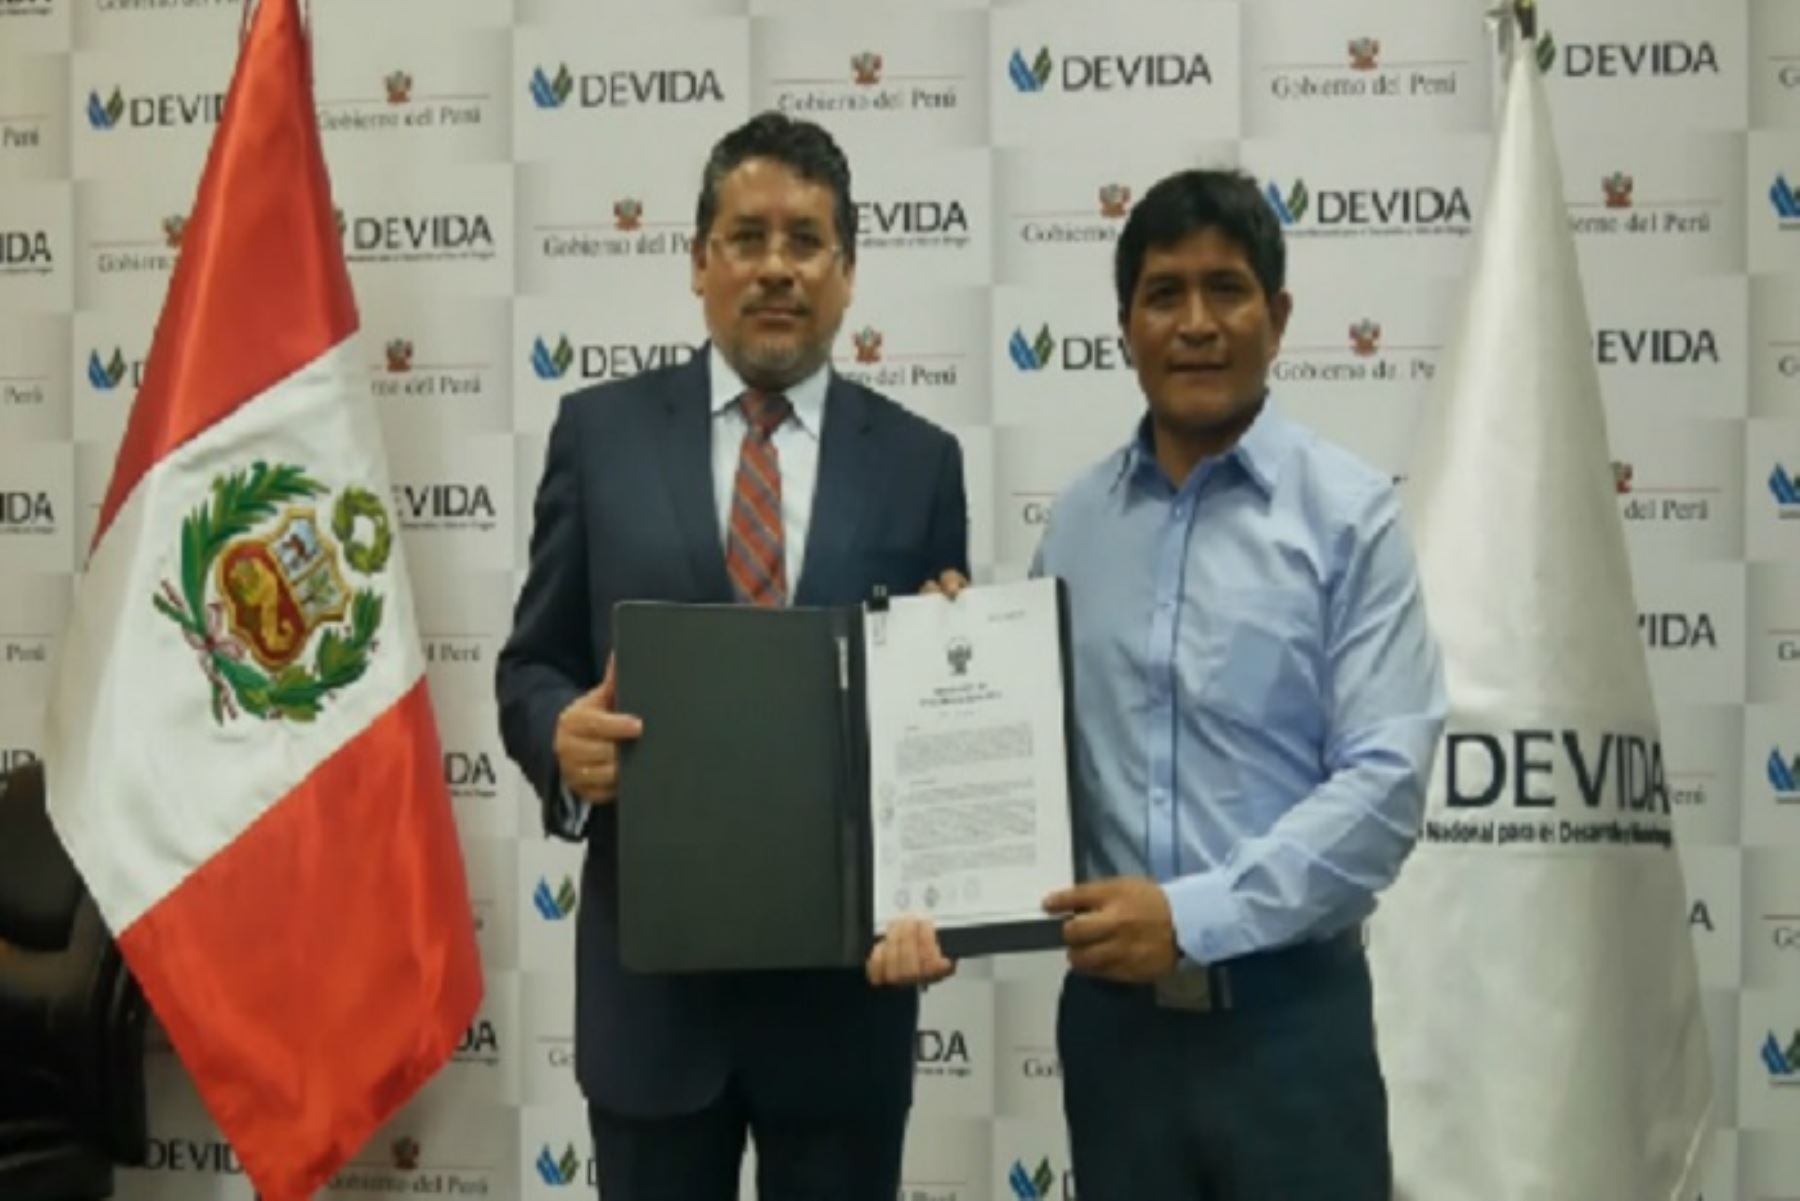 Presidente ejecutivo de Devida, Rubén Vargas Céspedes, entrega resolución que crea oficina Devida en Anchihuay al alcalde de ese distrito ubicado en el Vraem, Juan Remigio Borda.